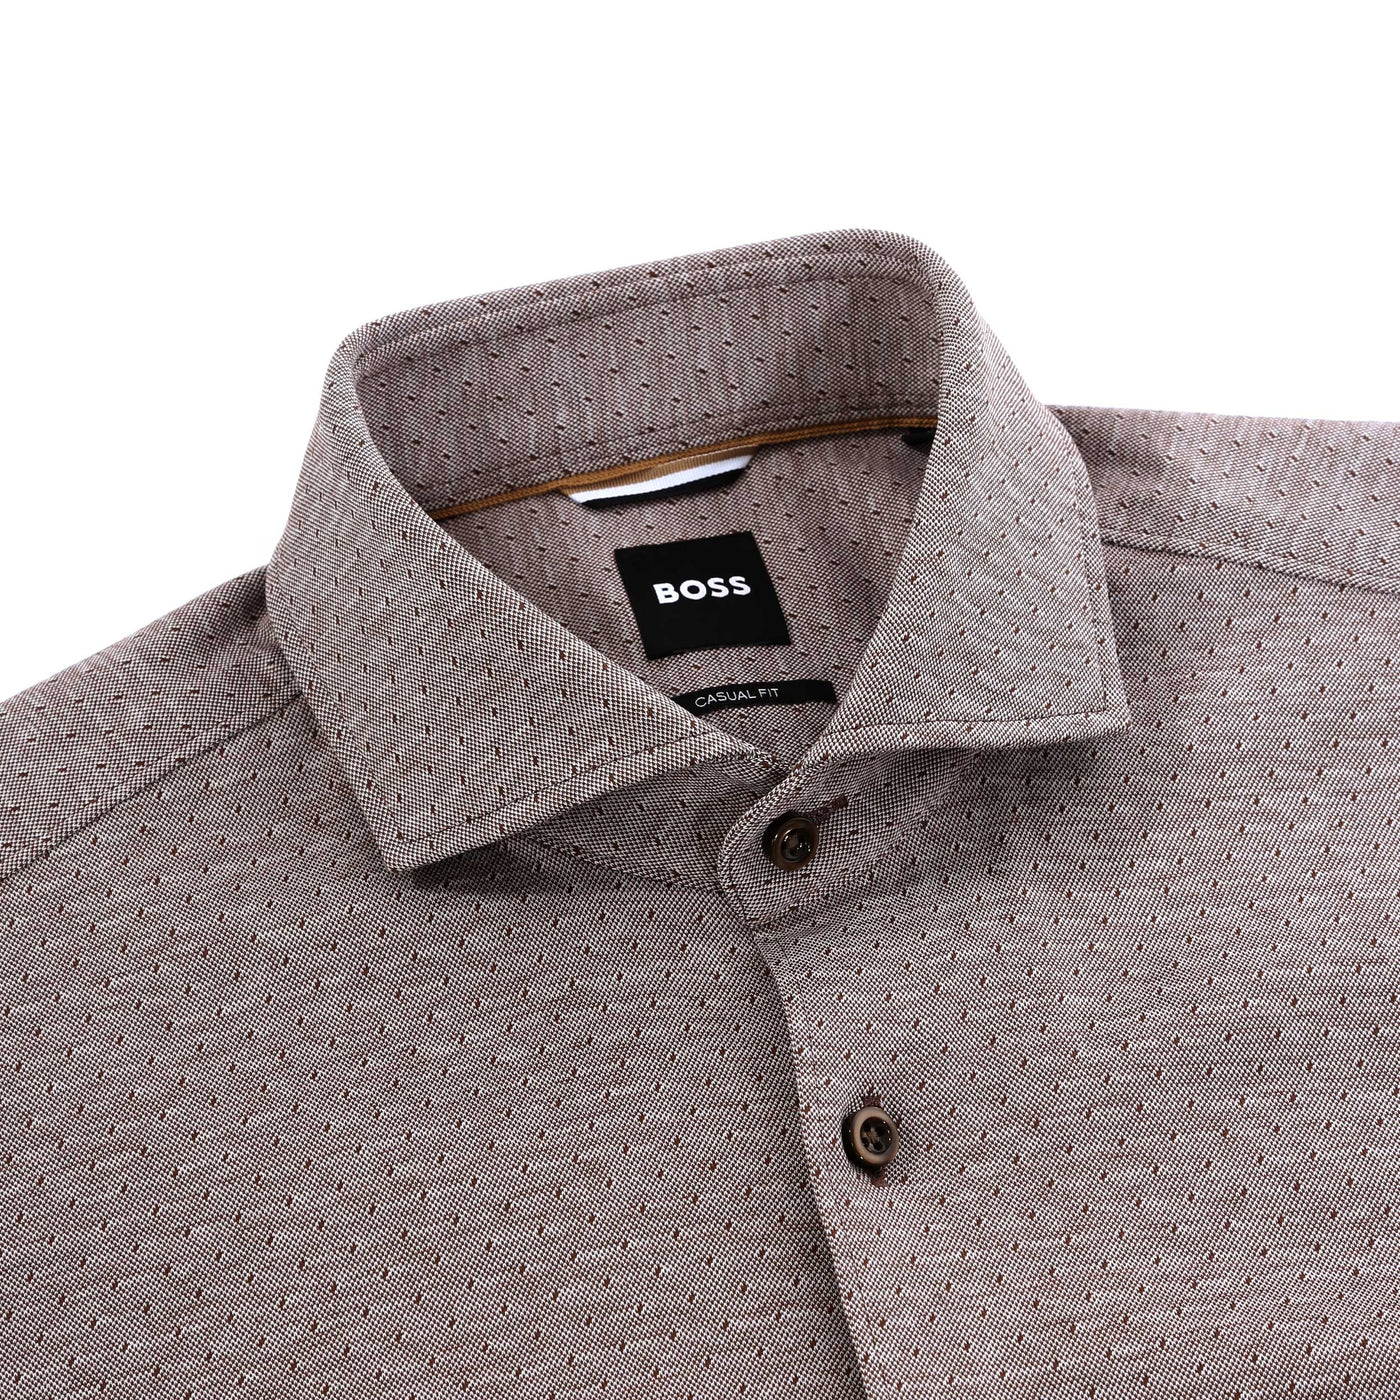 BOSS C Hal Spread C1 223 Shirt in Open Brown Collar